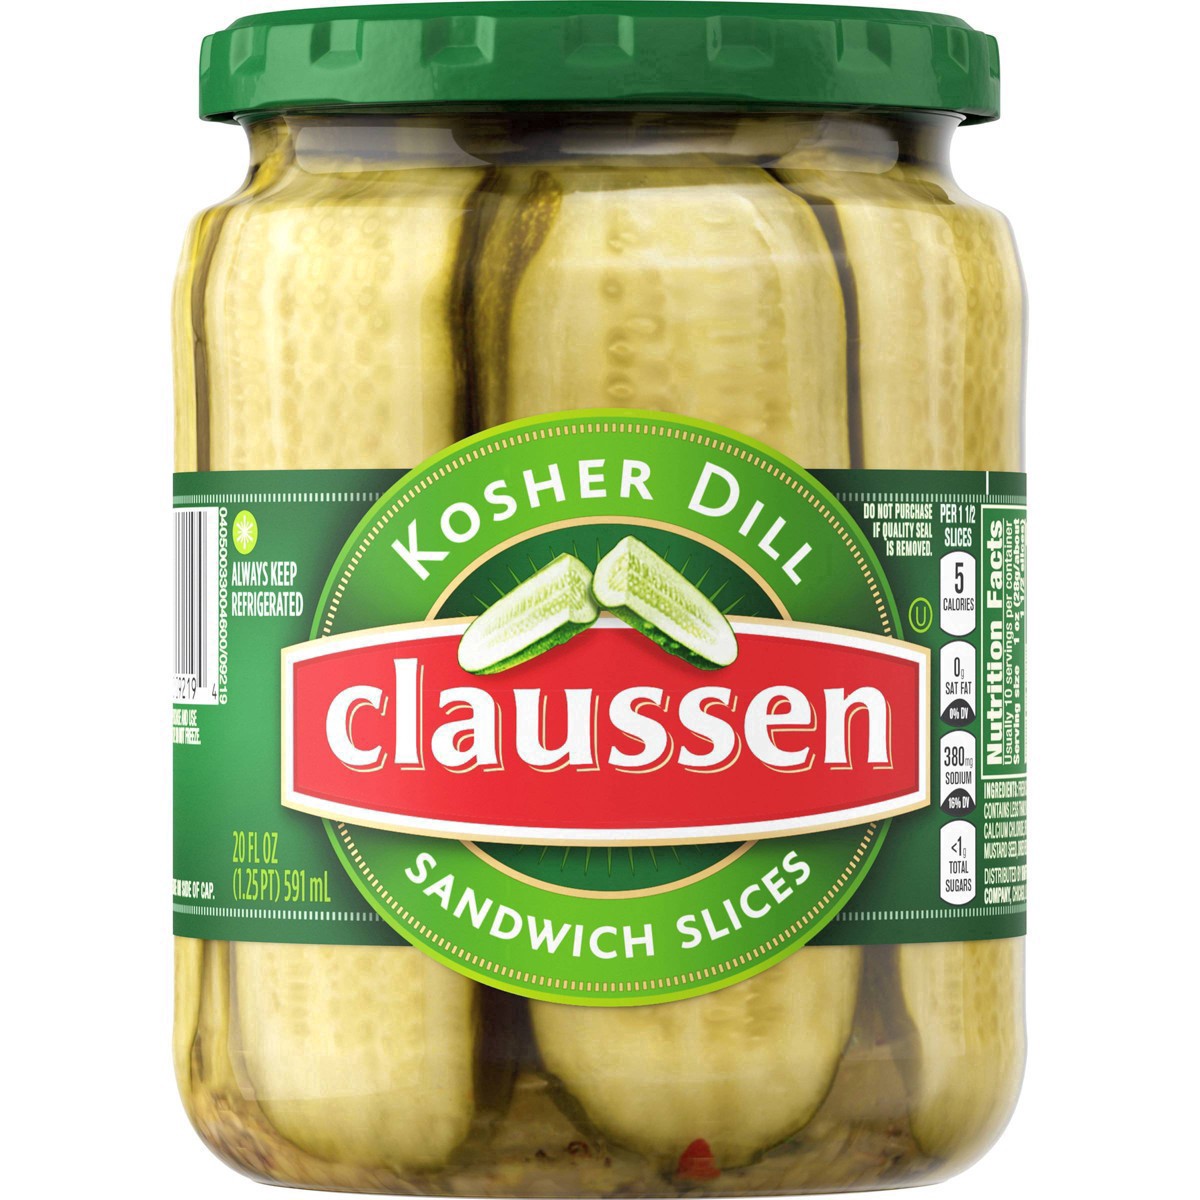 slide 142 of 144, Claussen Kosher Dill Pickle Sandwich Slices, 20 fl. oz. Jar, 20 fl oz